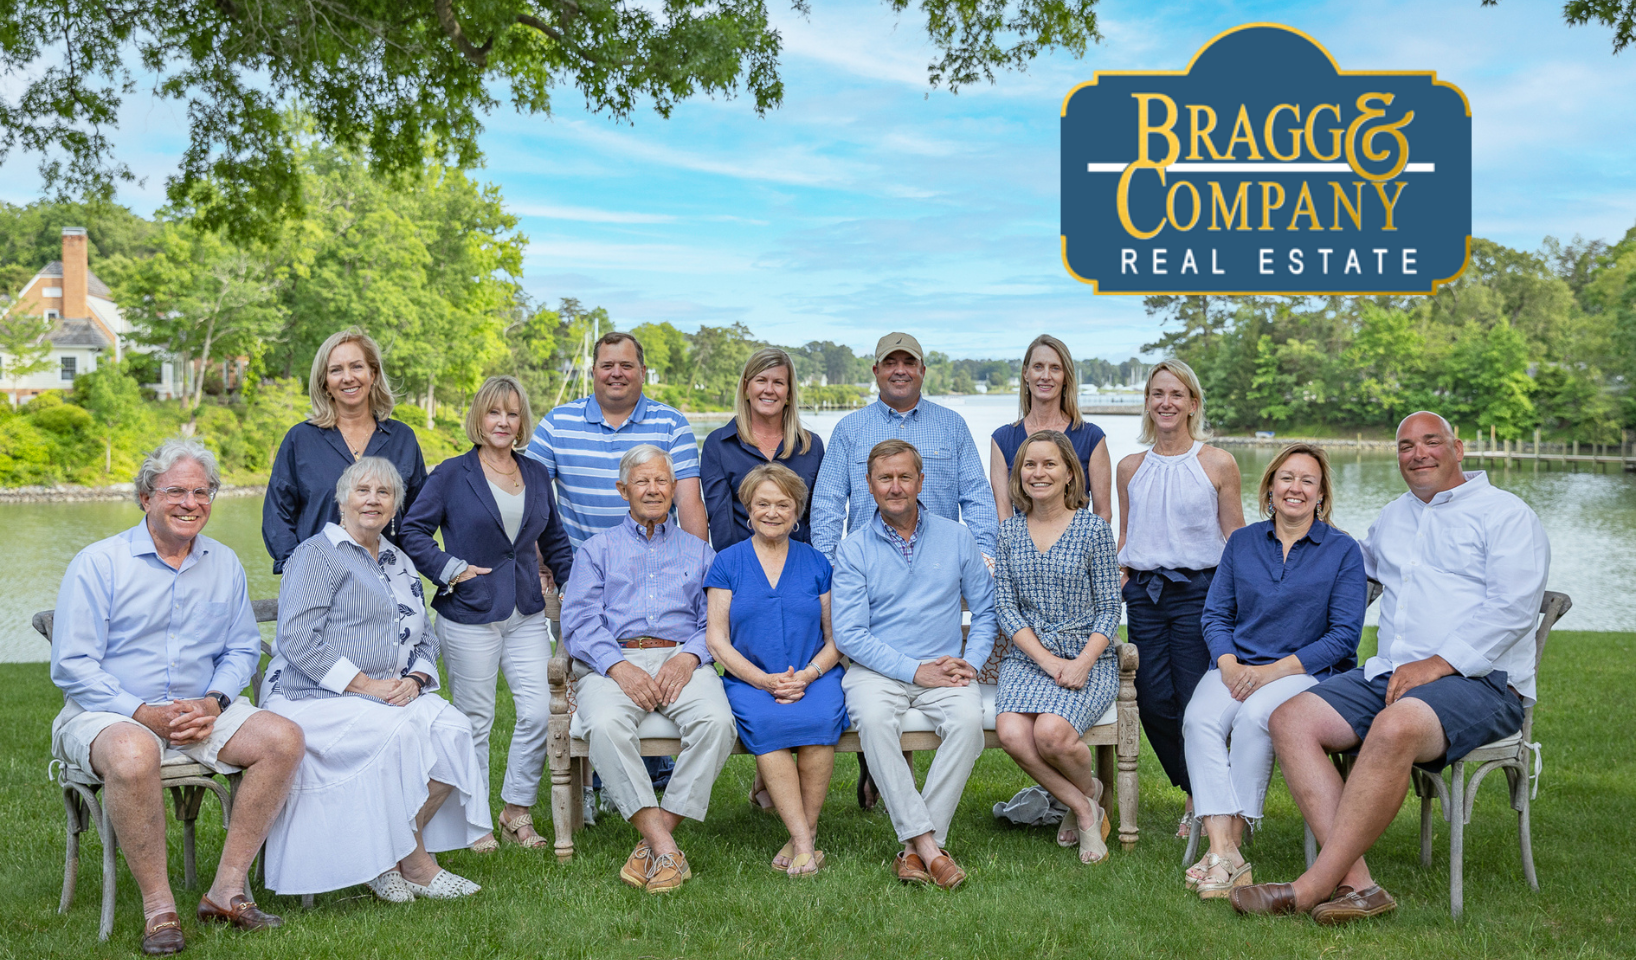 Bragg & Company Real Estate